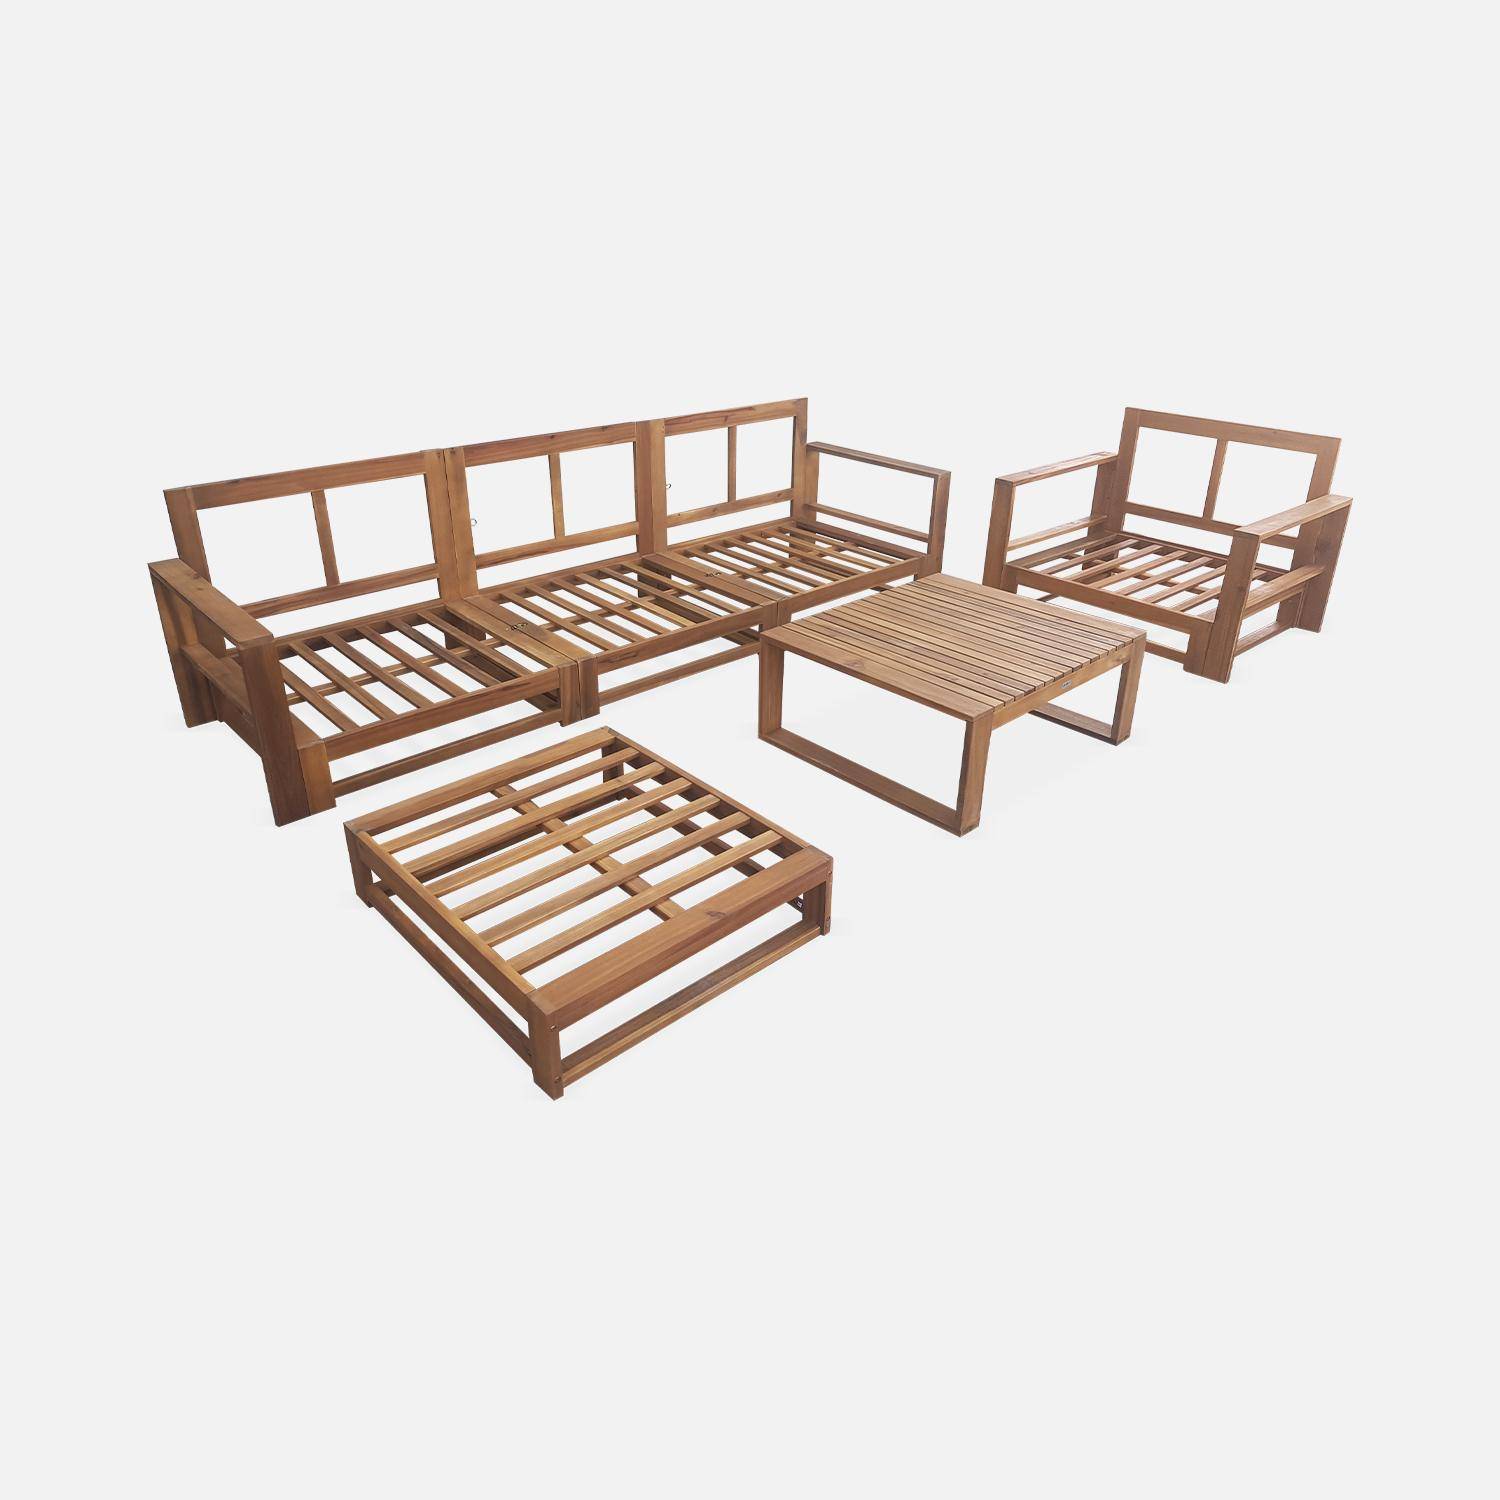 Salon de jardin en bois 5 places - Mendoza - Coussins gris, acacia, 6 éléments modulables, design Photo6